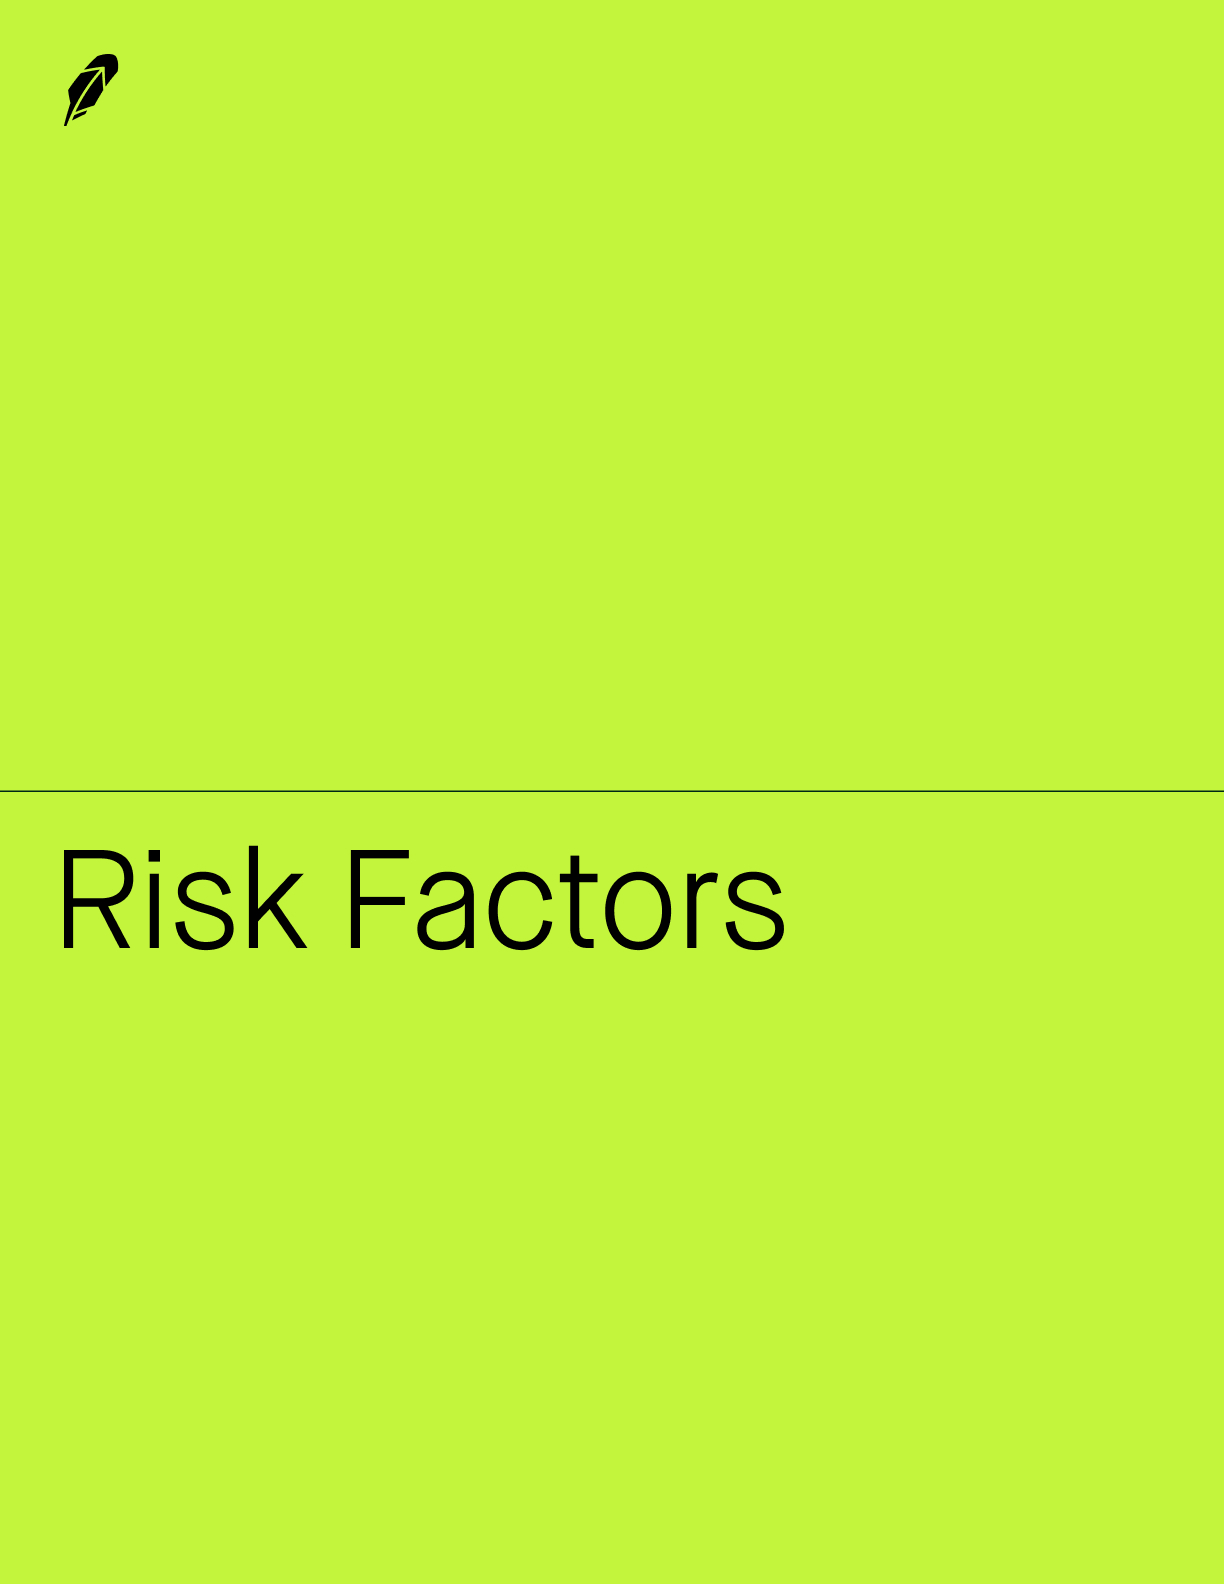 riskfactors1ba.jpg